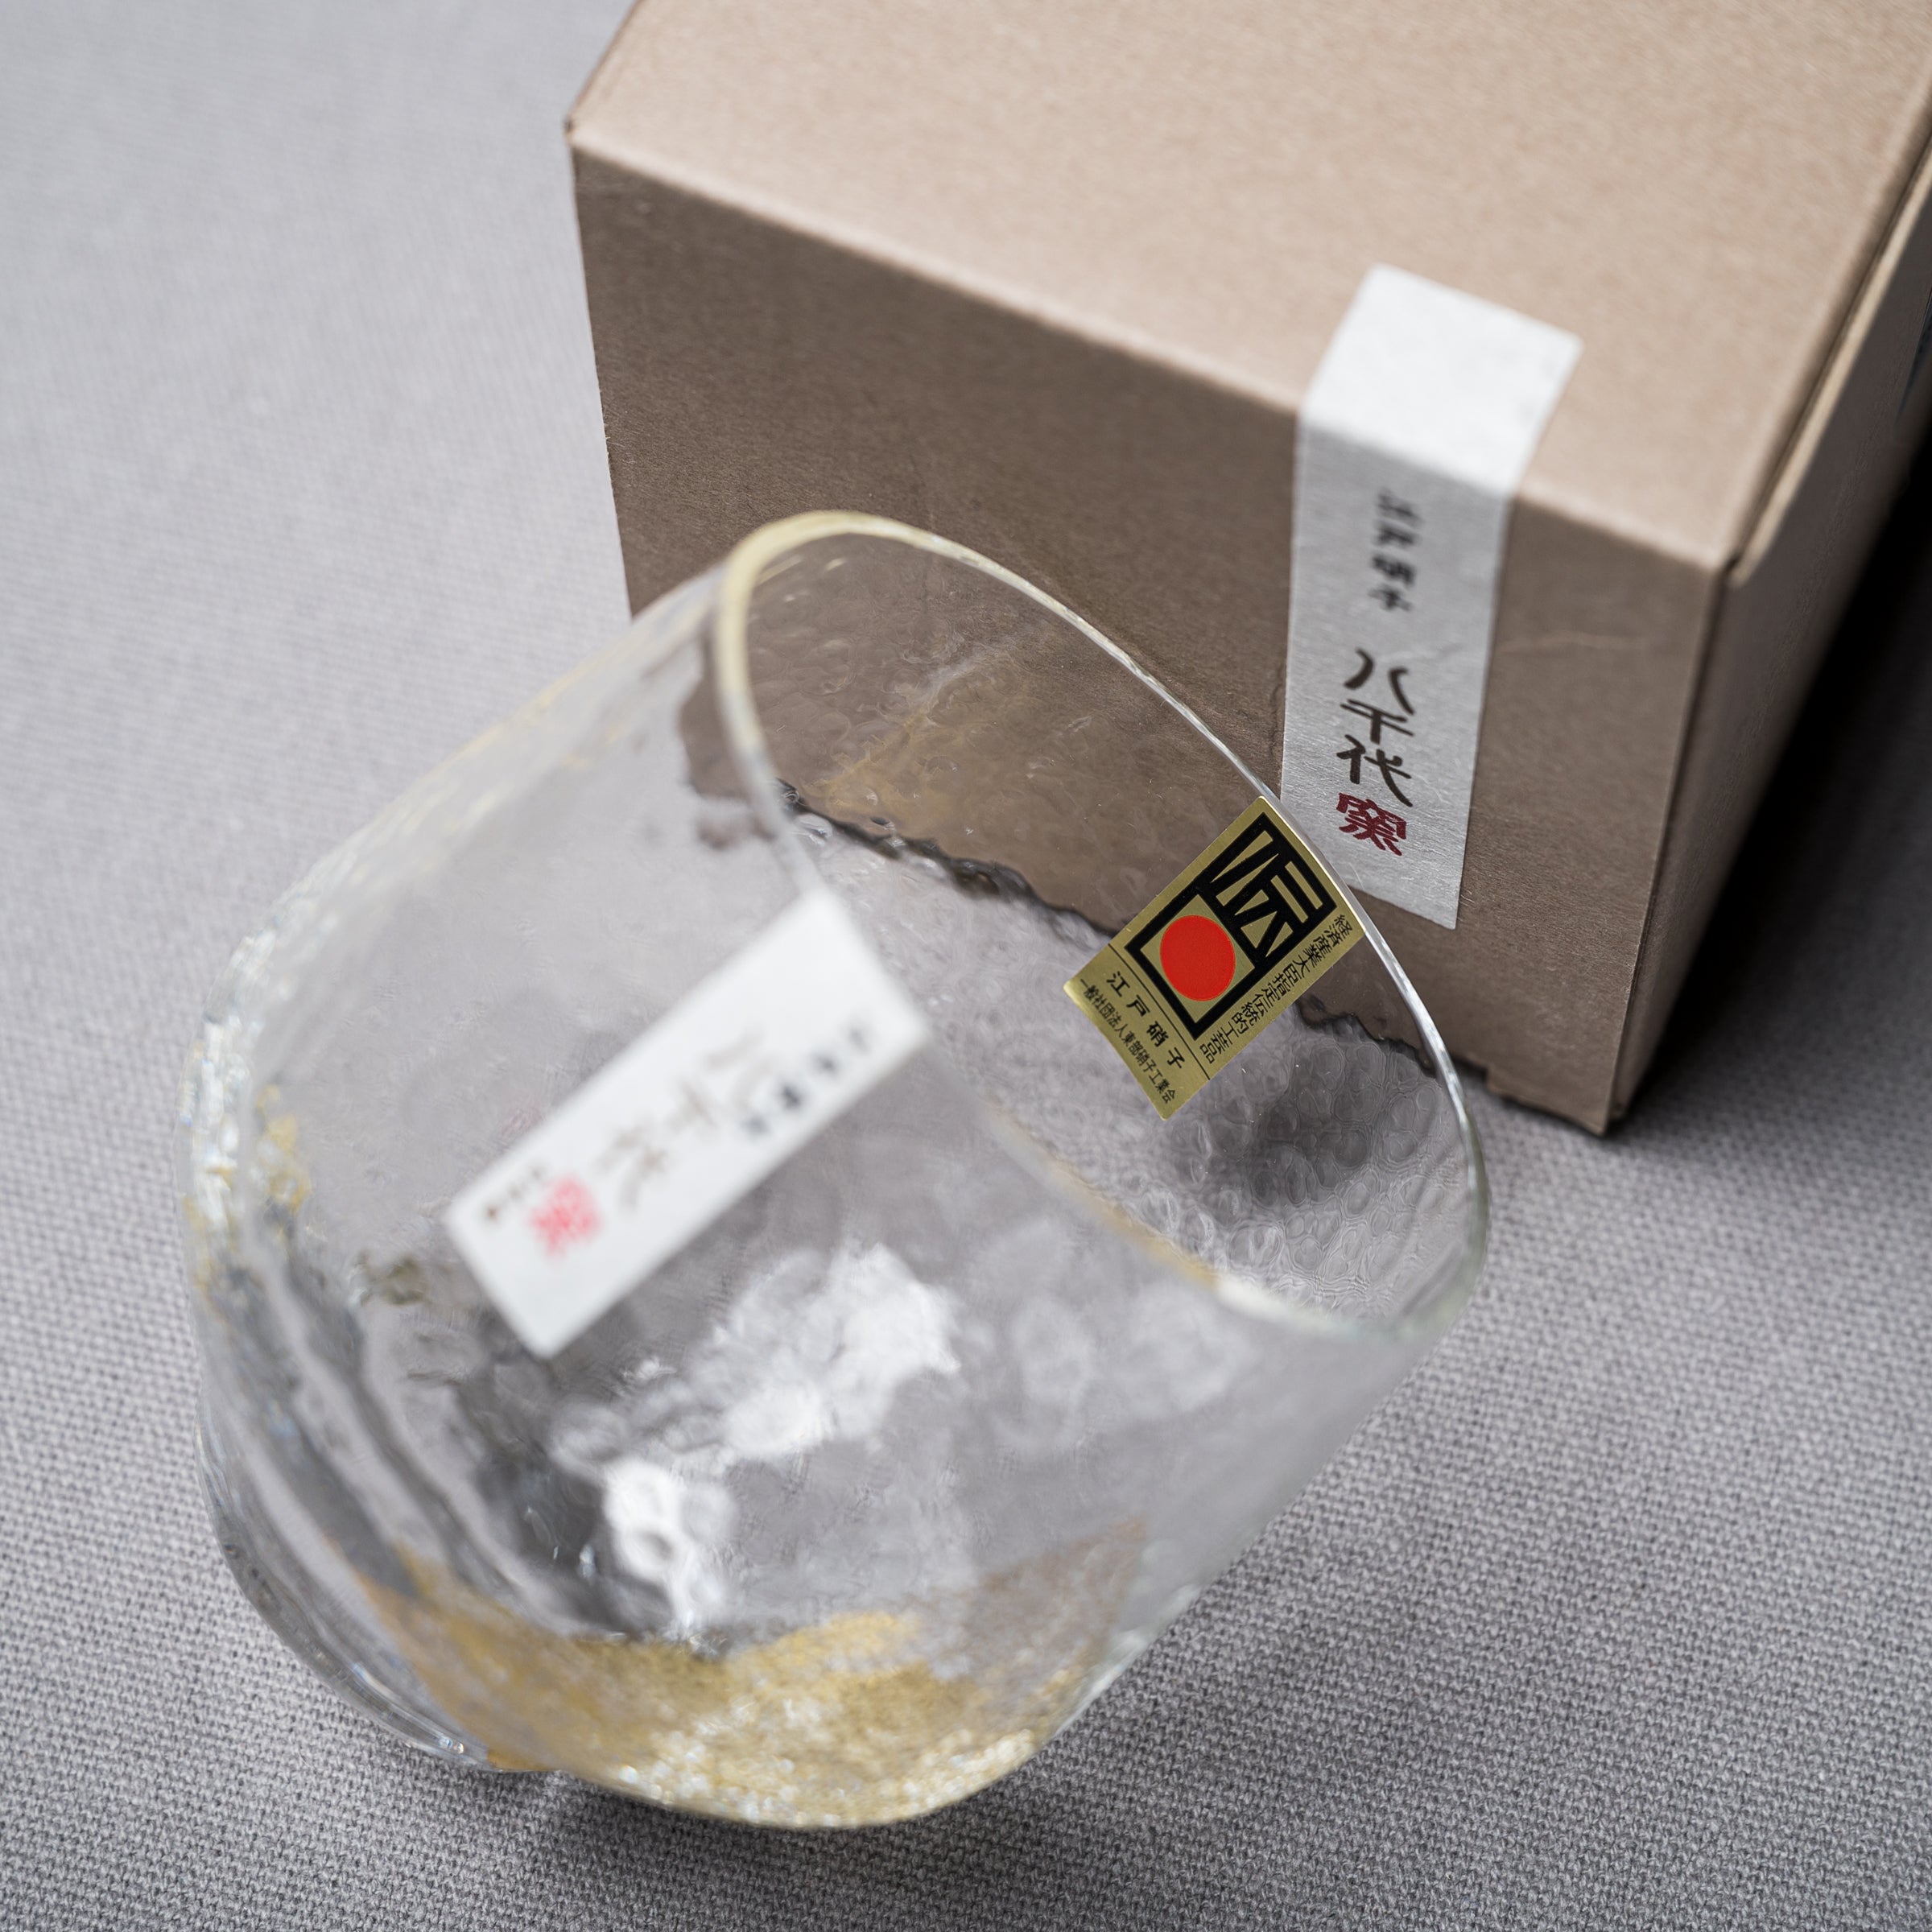 Yachiyo Edo Glass Tumbler - Gold Leaf / 江戸硝子 八千代 金箔